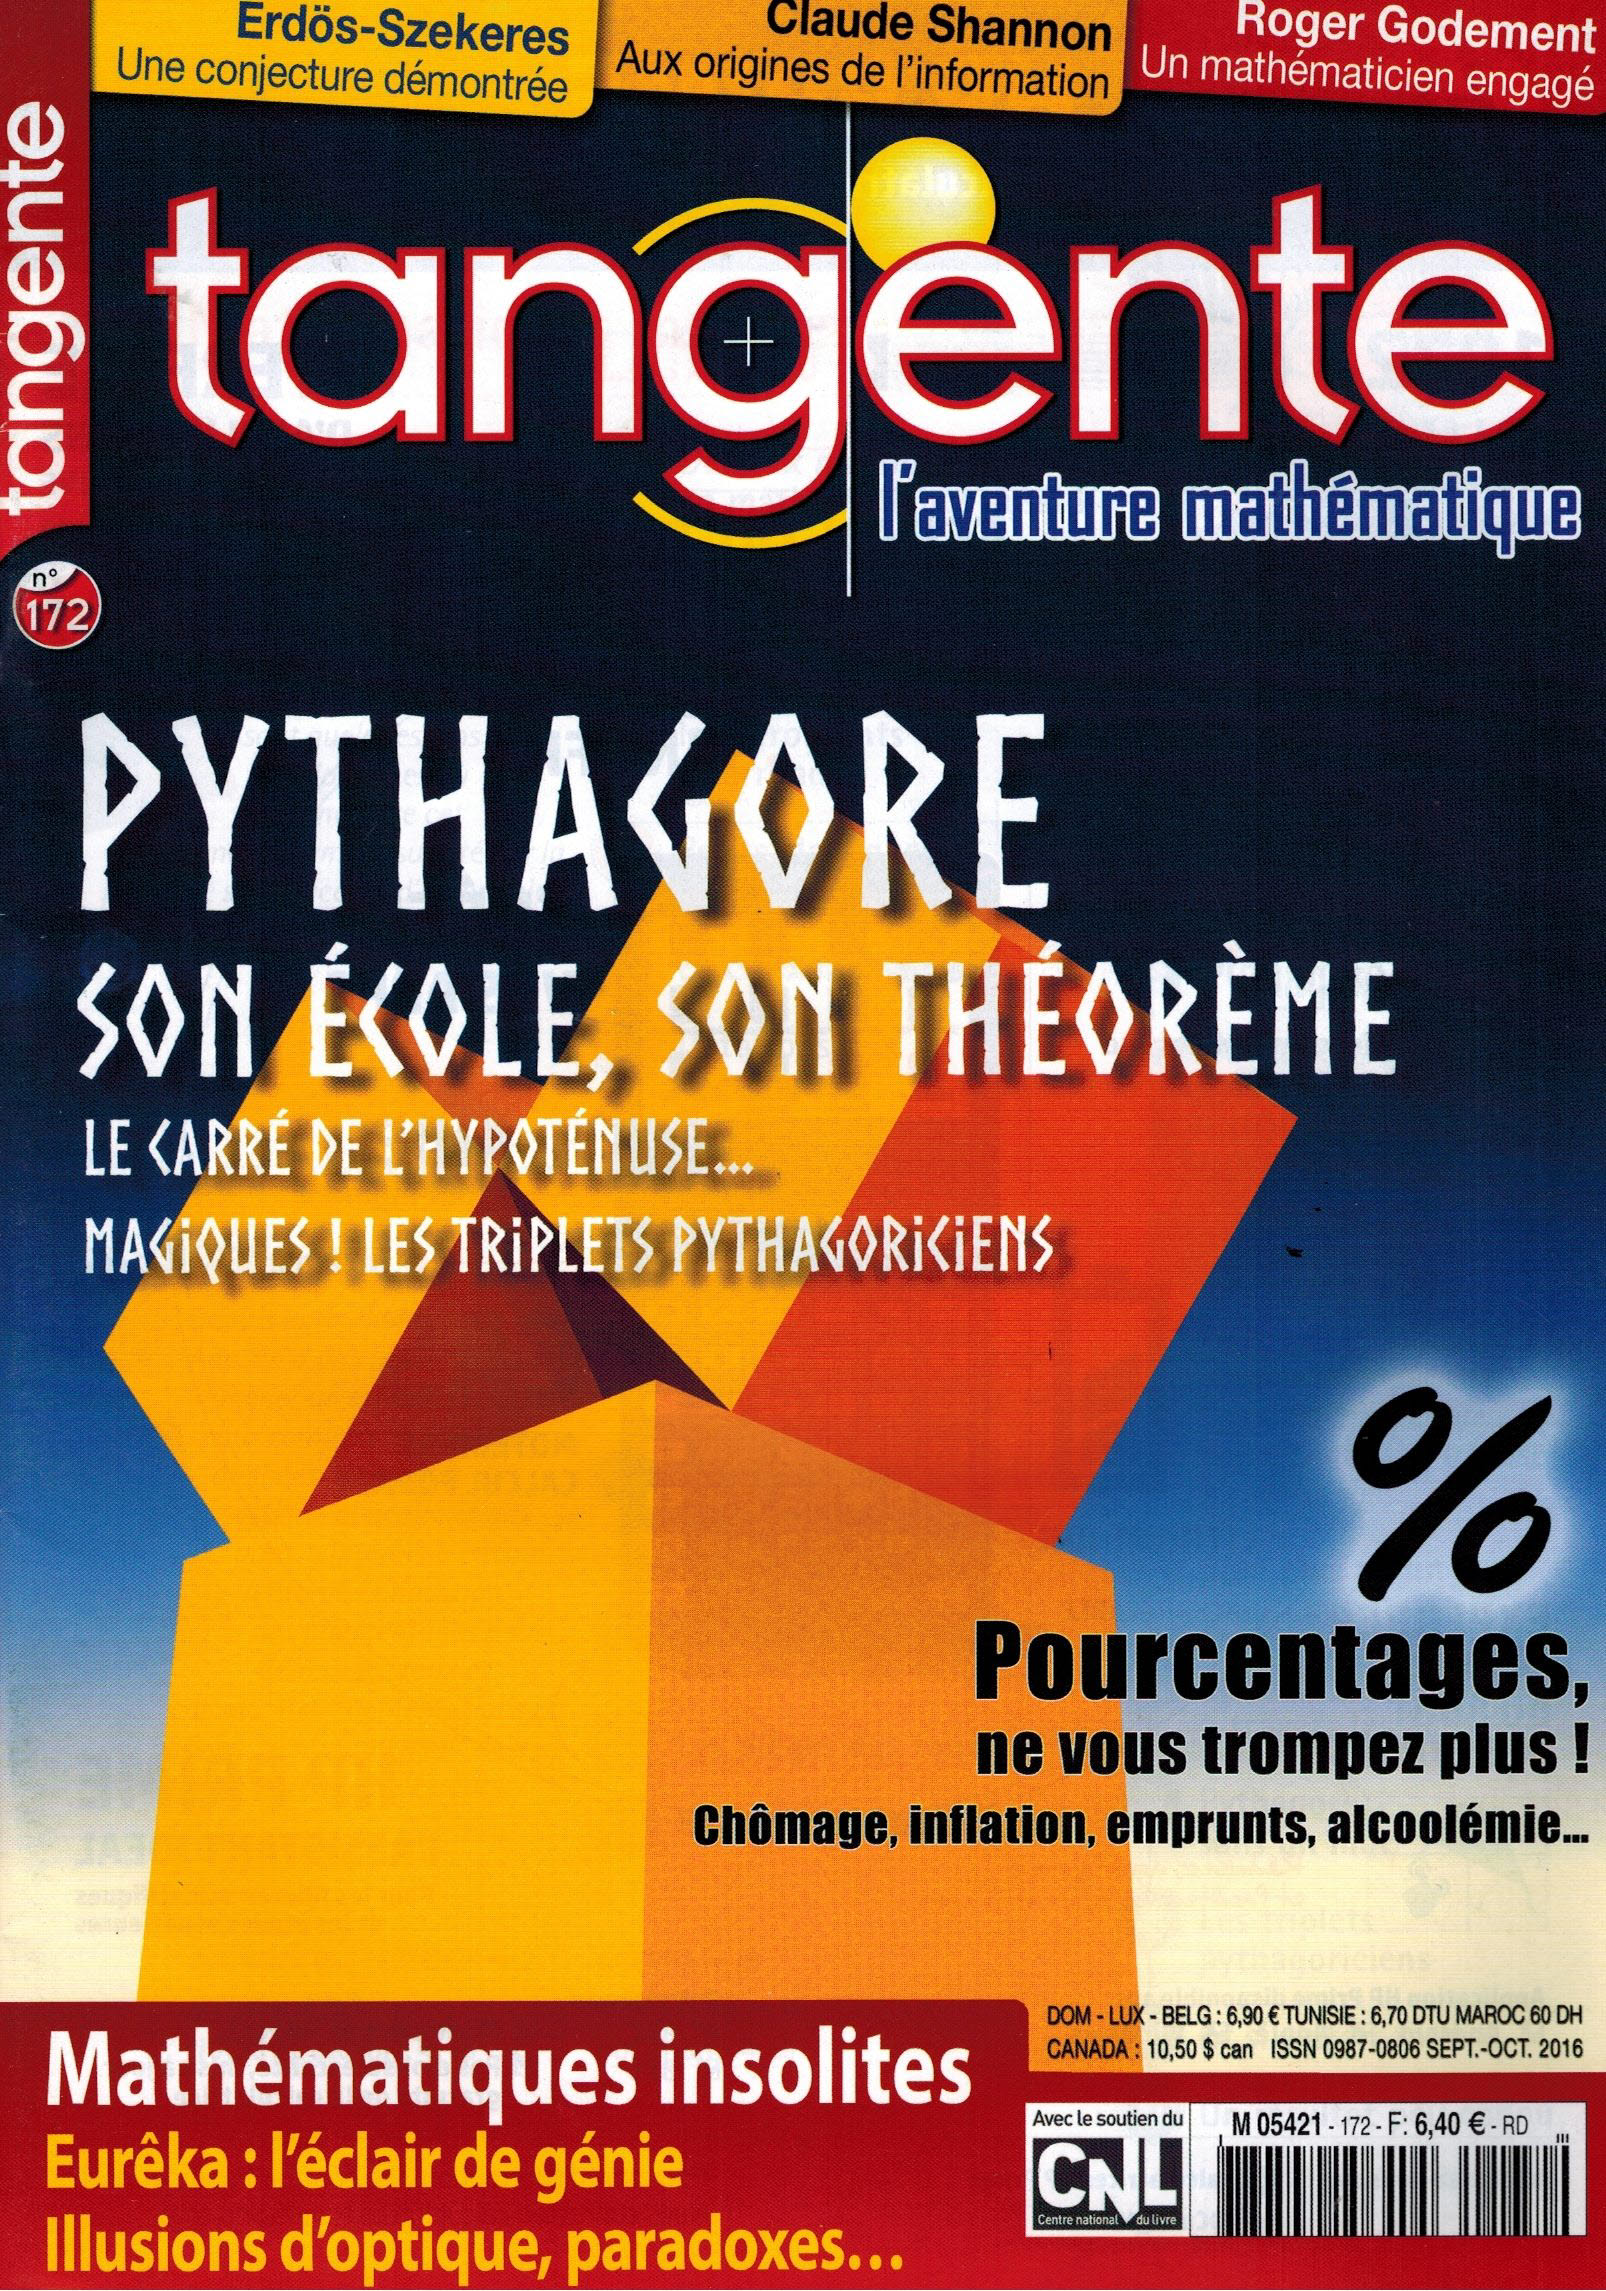 image Tangente n°172 - Le théorème de Pythagore